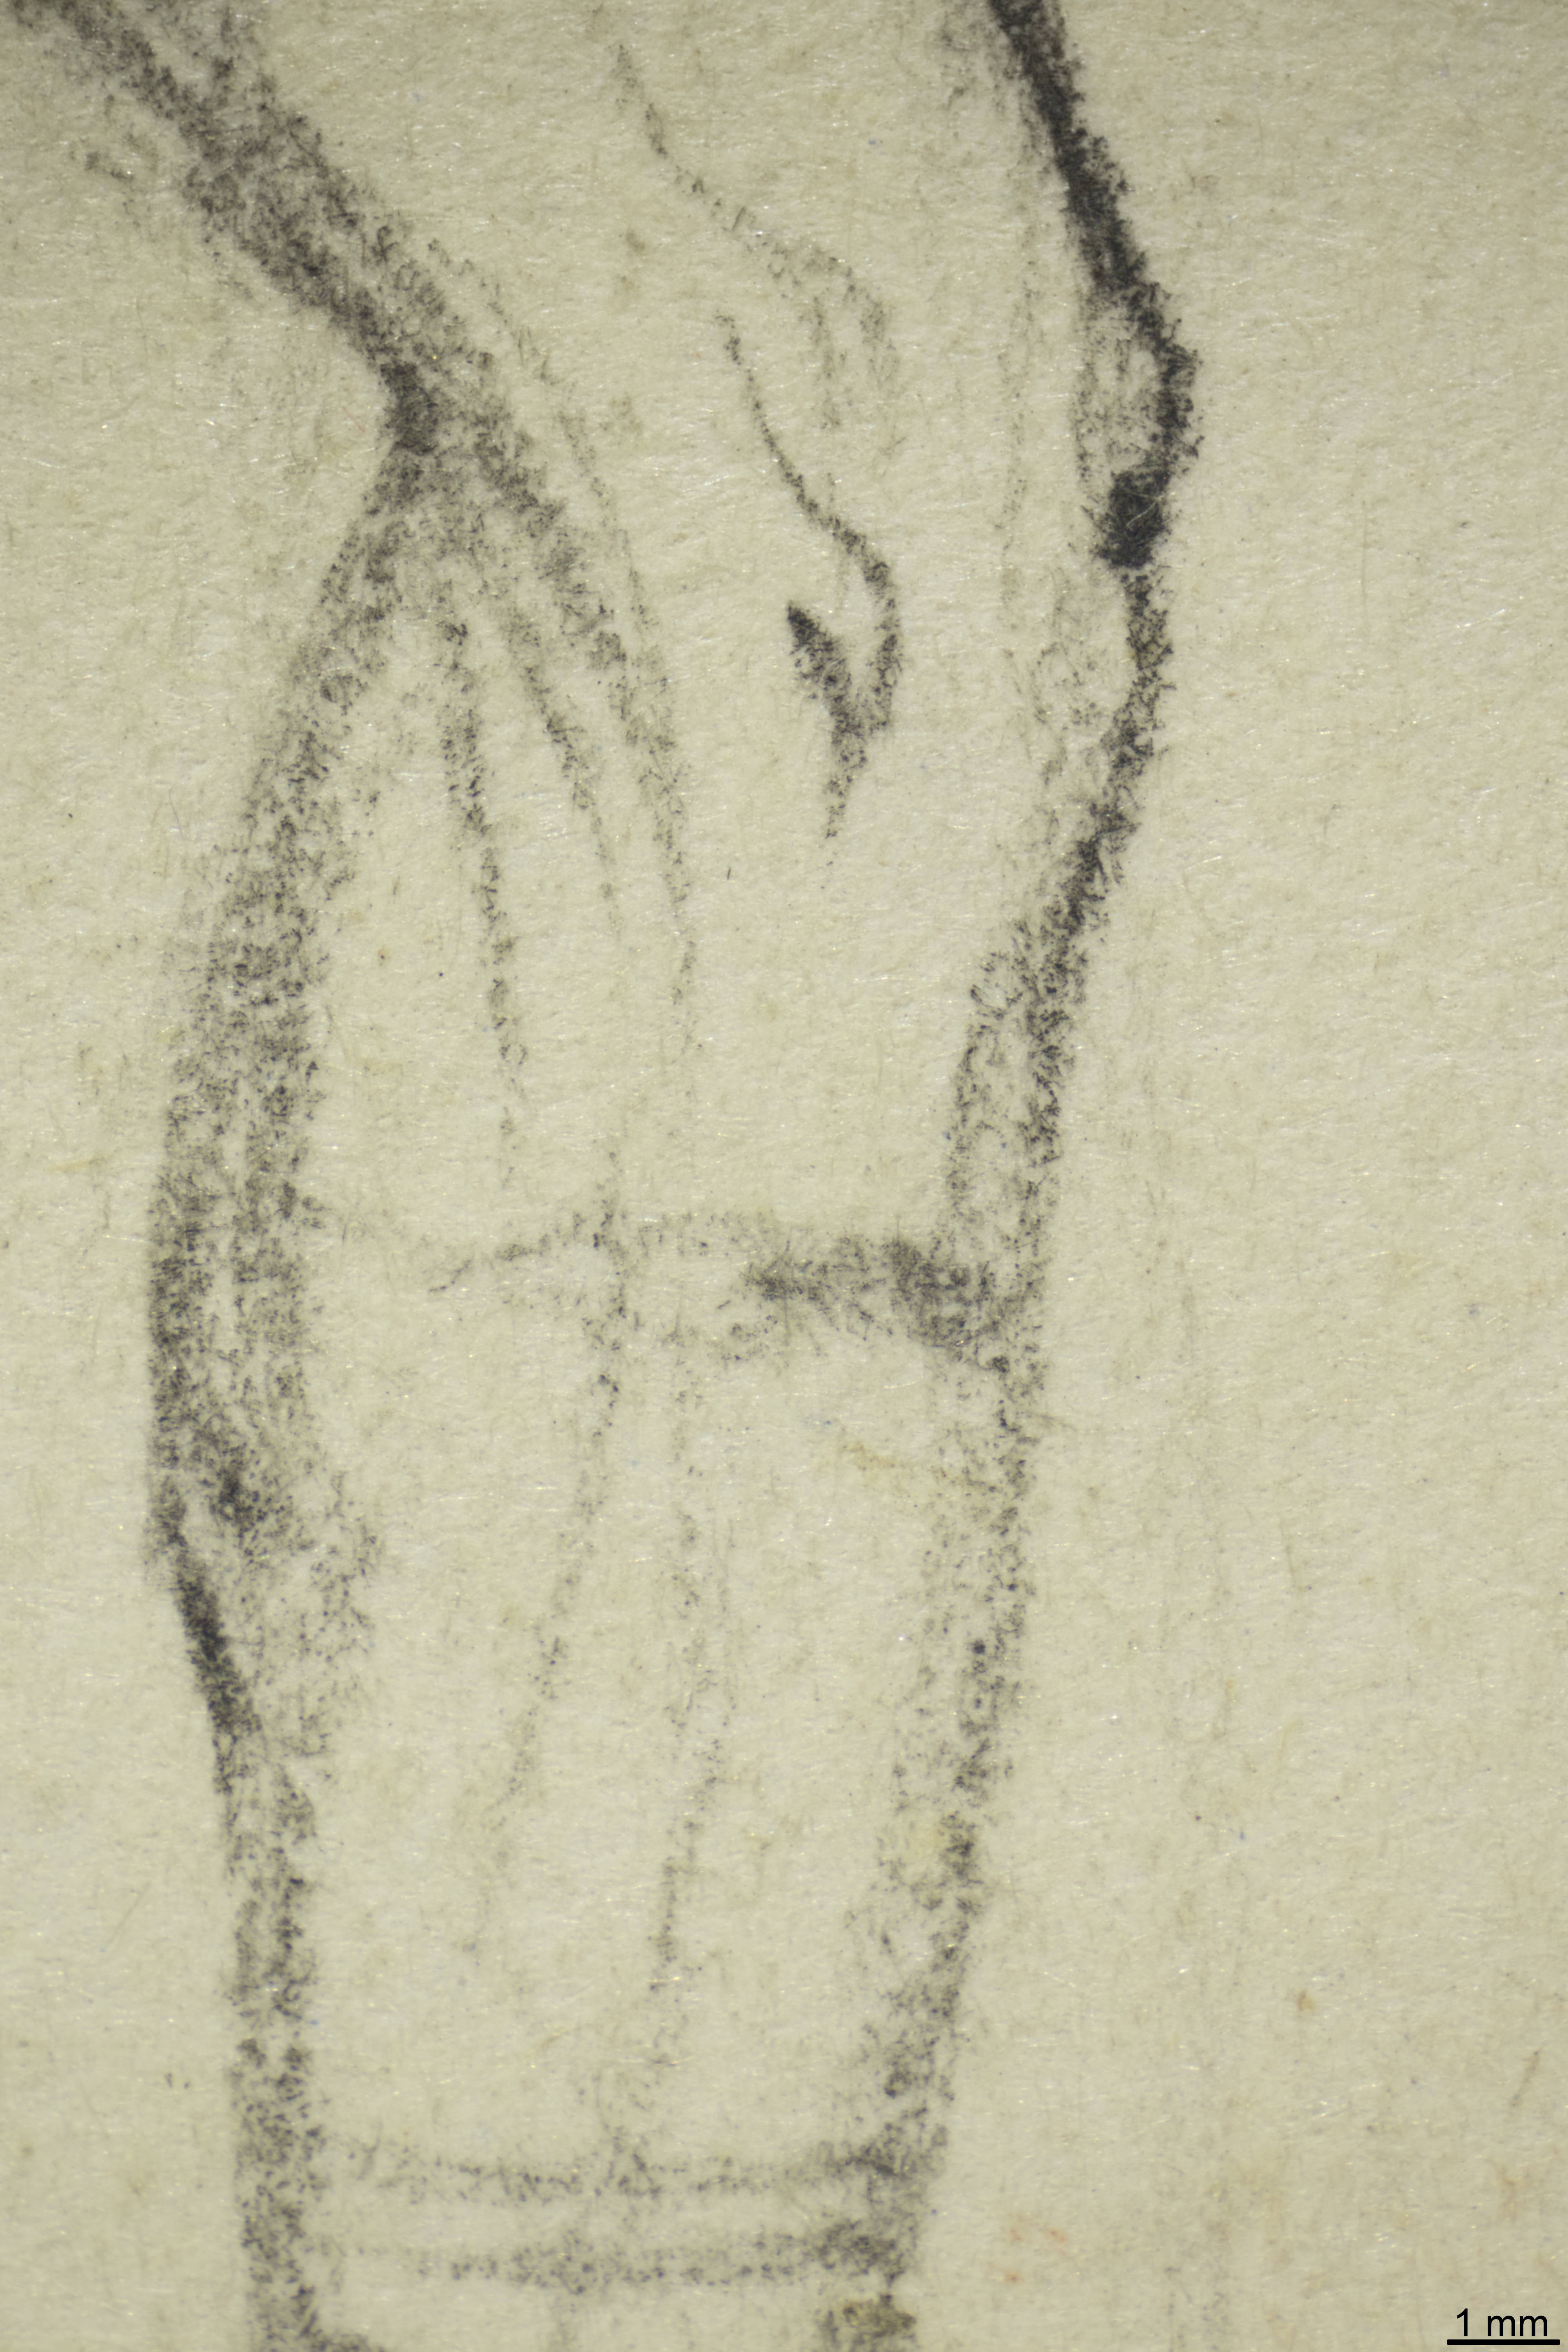 Detailaufnahme der Piranesi-Zeichnung mit Auflicht.